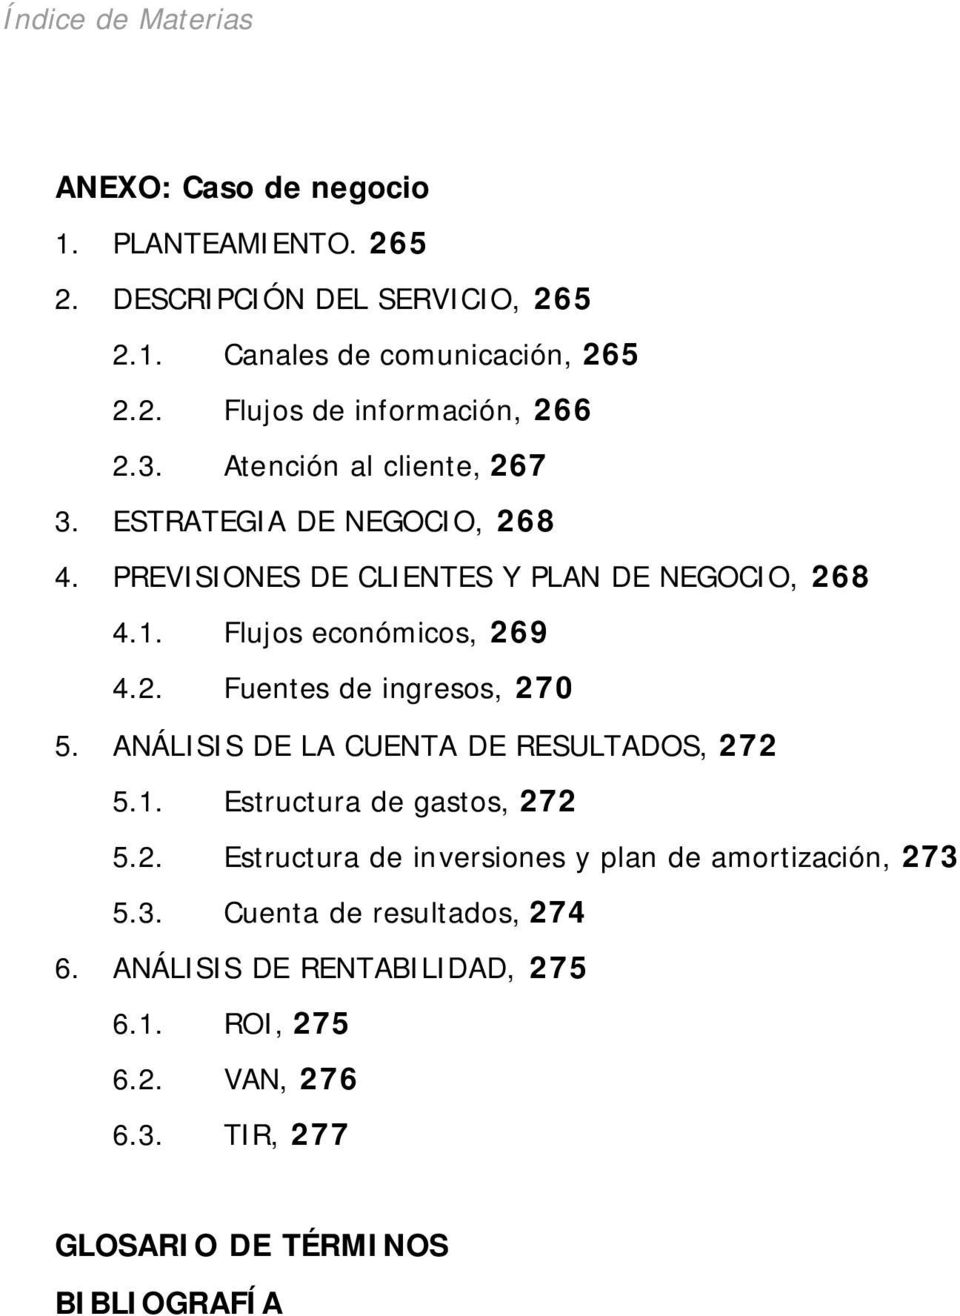 ANÁLISIS DE LA CUENTA DE RESULTADOS, 272 5.1. Estructura de gastos, 272 5.2. Estructura de inversiones y plan de amortización, 273 